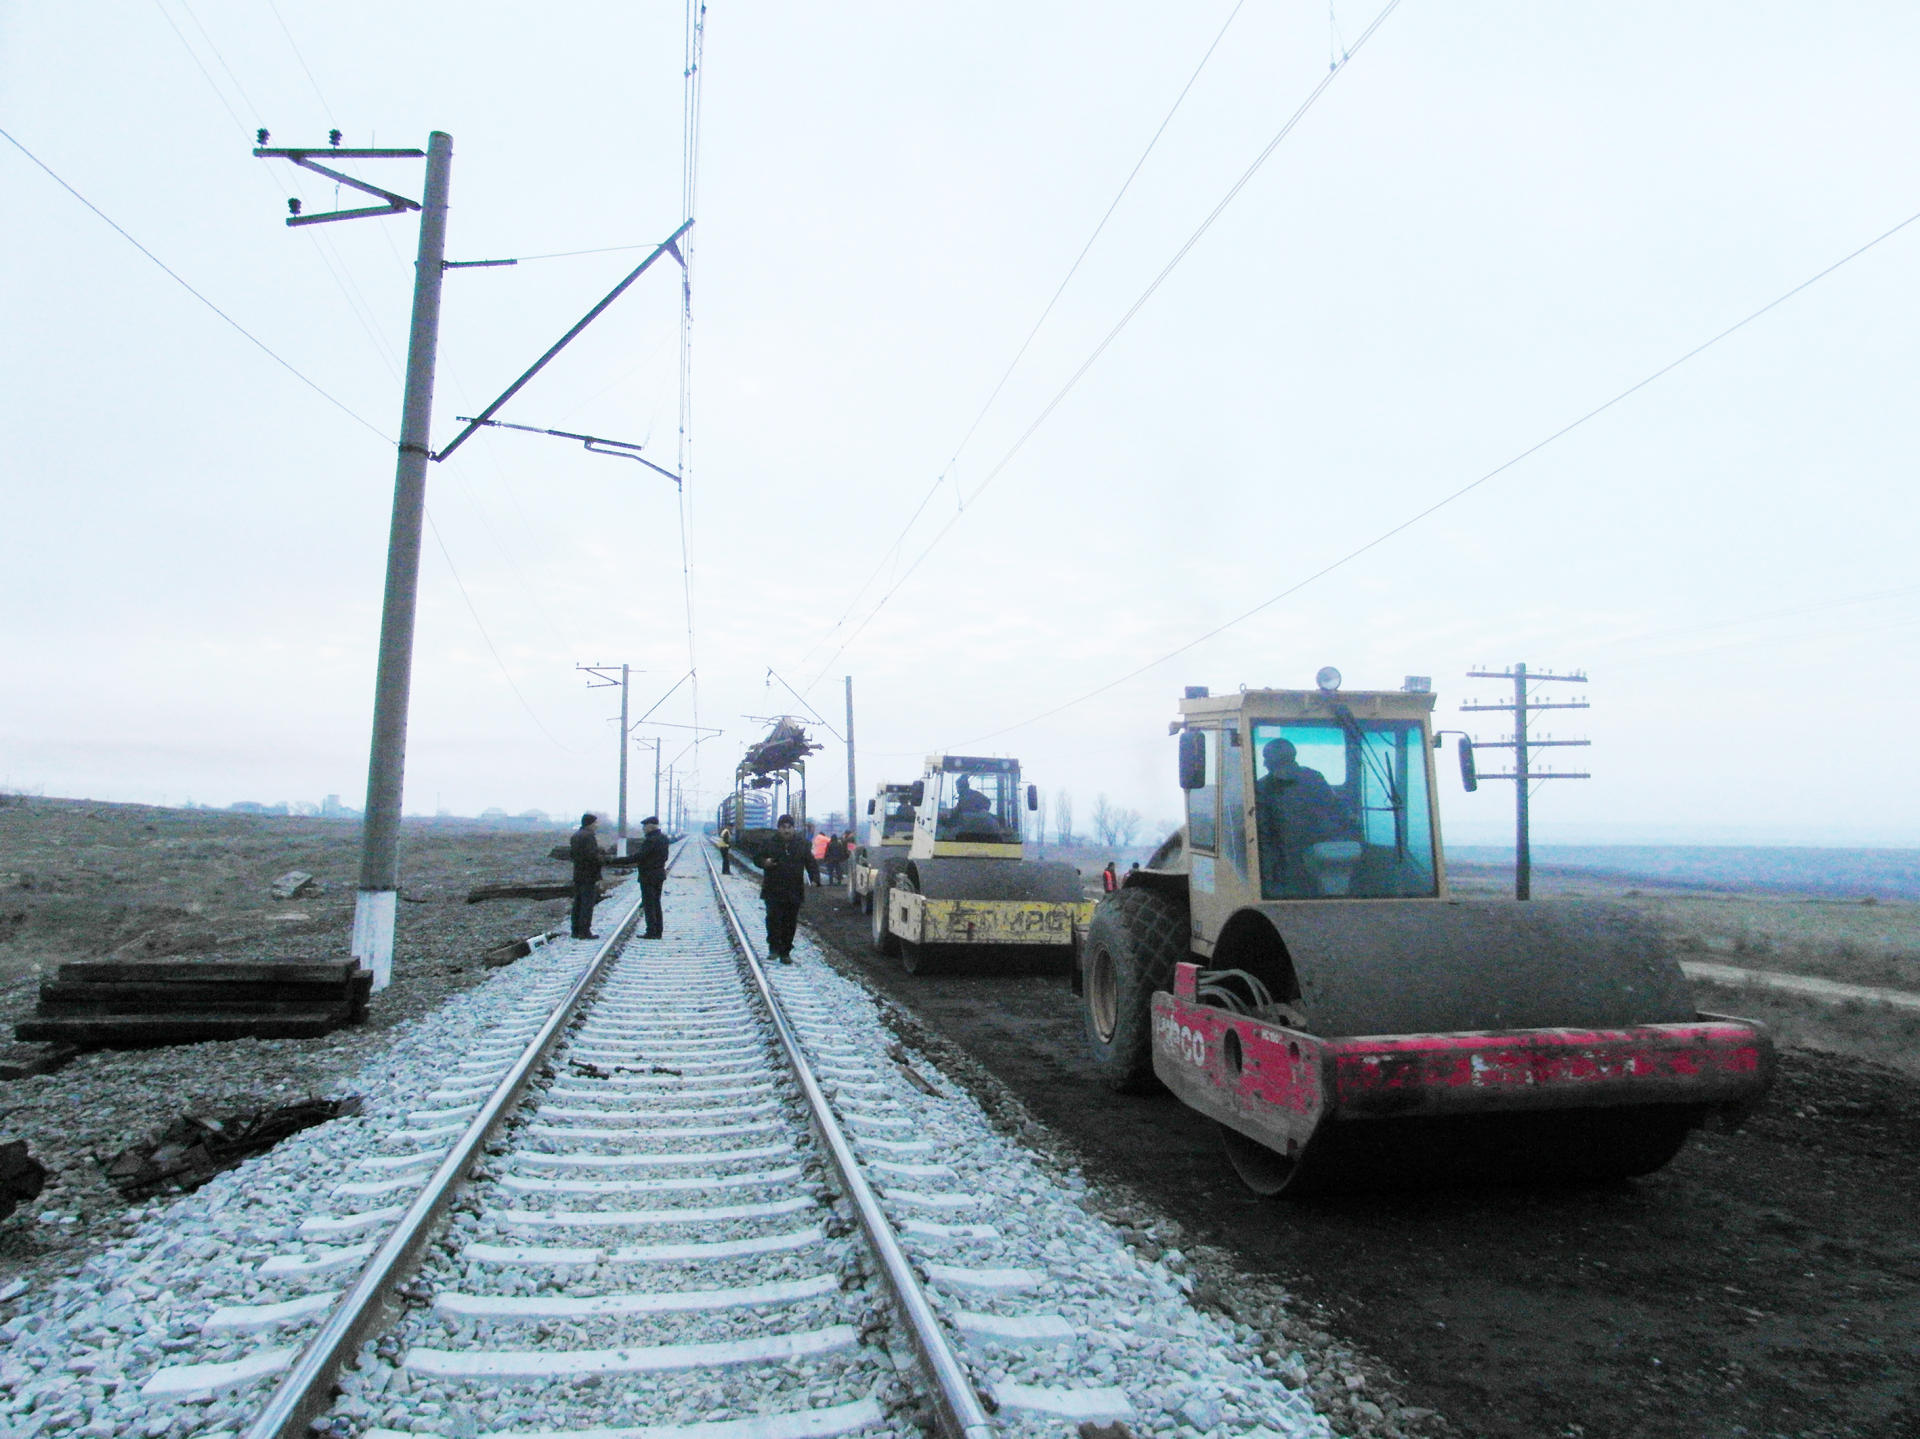 Bakı-Böyük Kəsik istiqamətində 600 km dəmir yolu əsaslı təmir olunur (FOTO) - Gallery Image